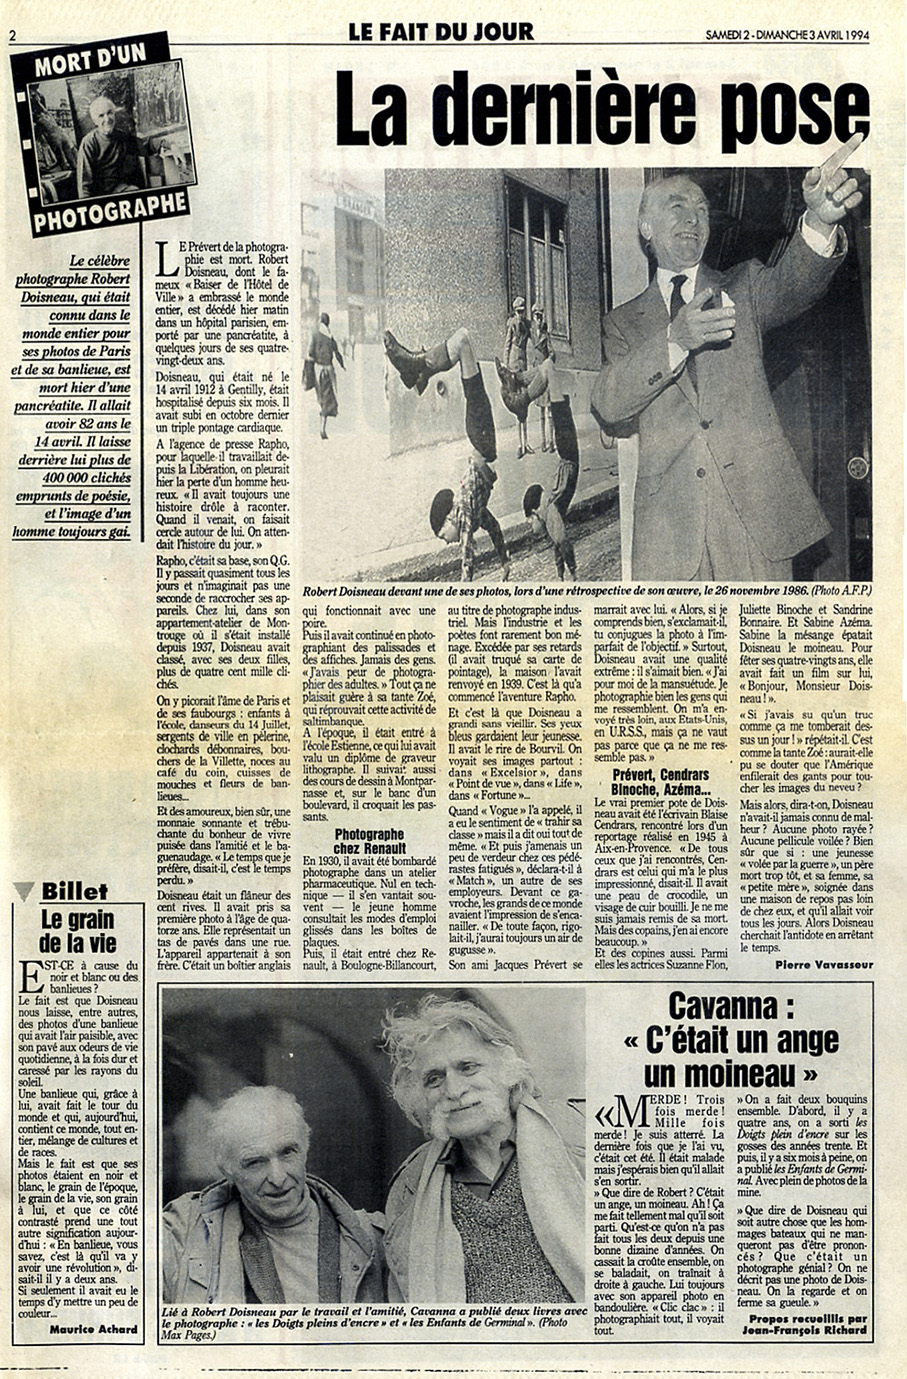 Aujourd'hui-Le Parisien du 2 avril 1994